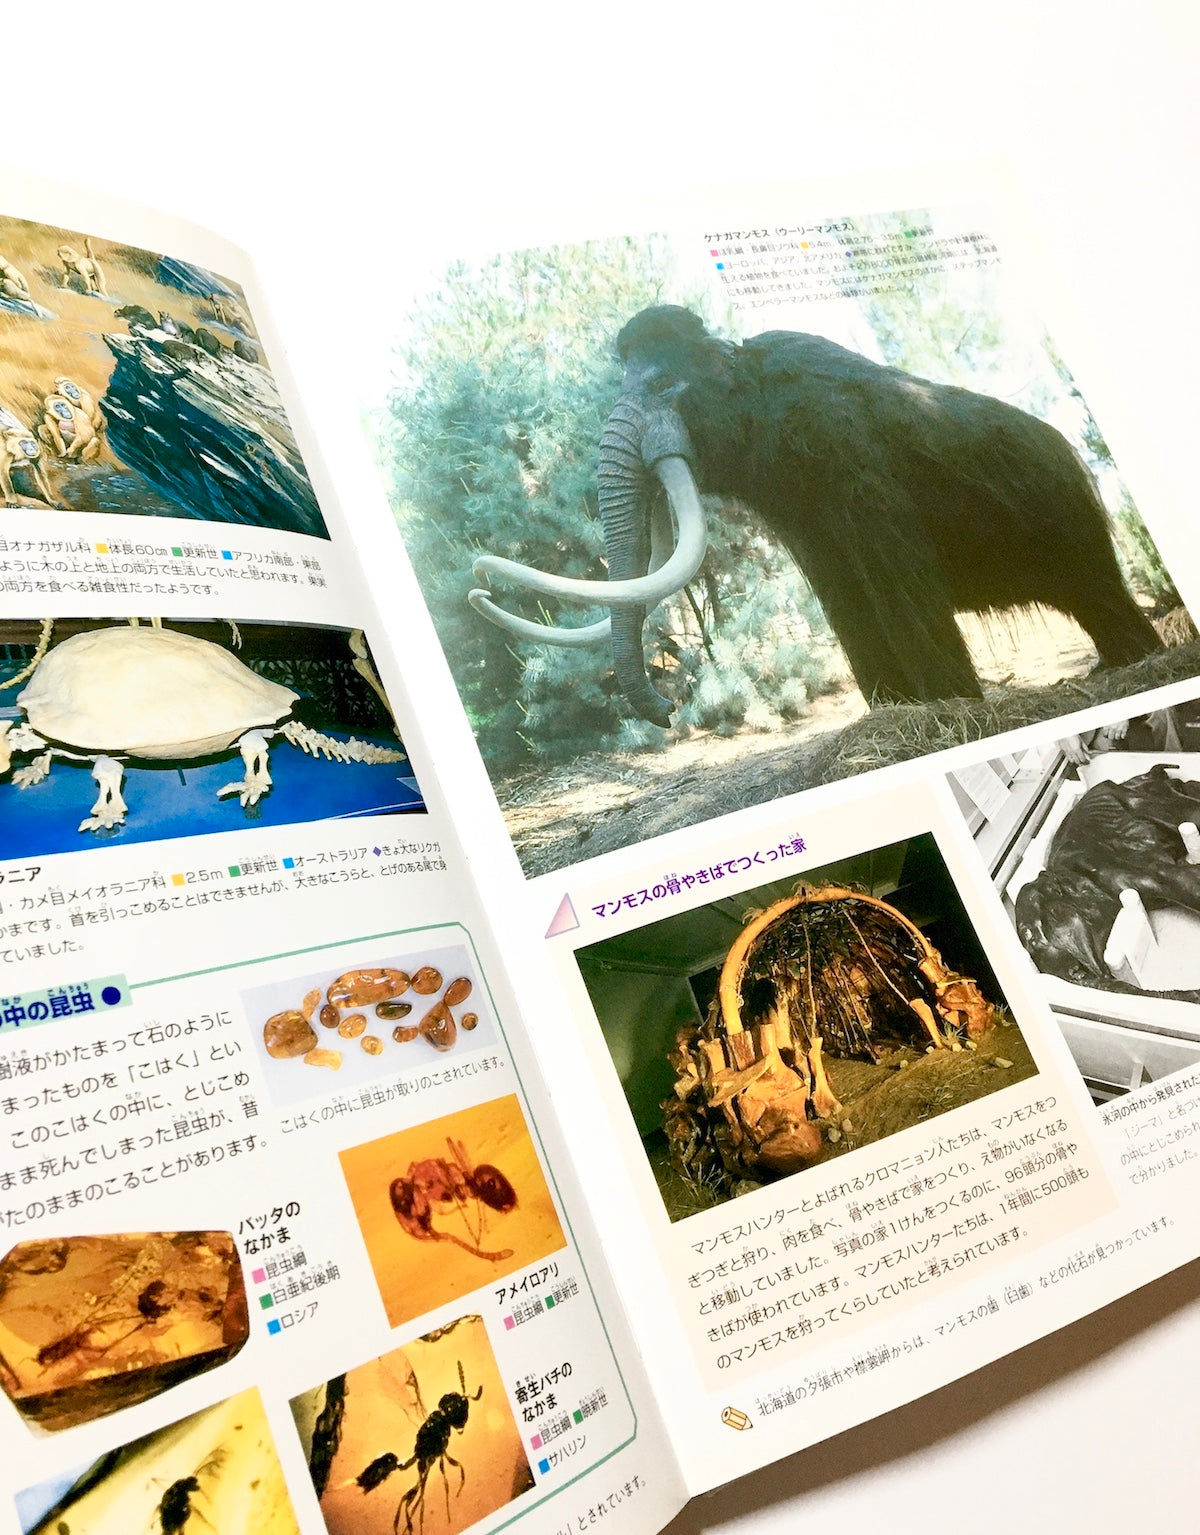 大昔の動物 (ニューワイド学研の図鑑) – Tsubaki japanese bookstore